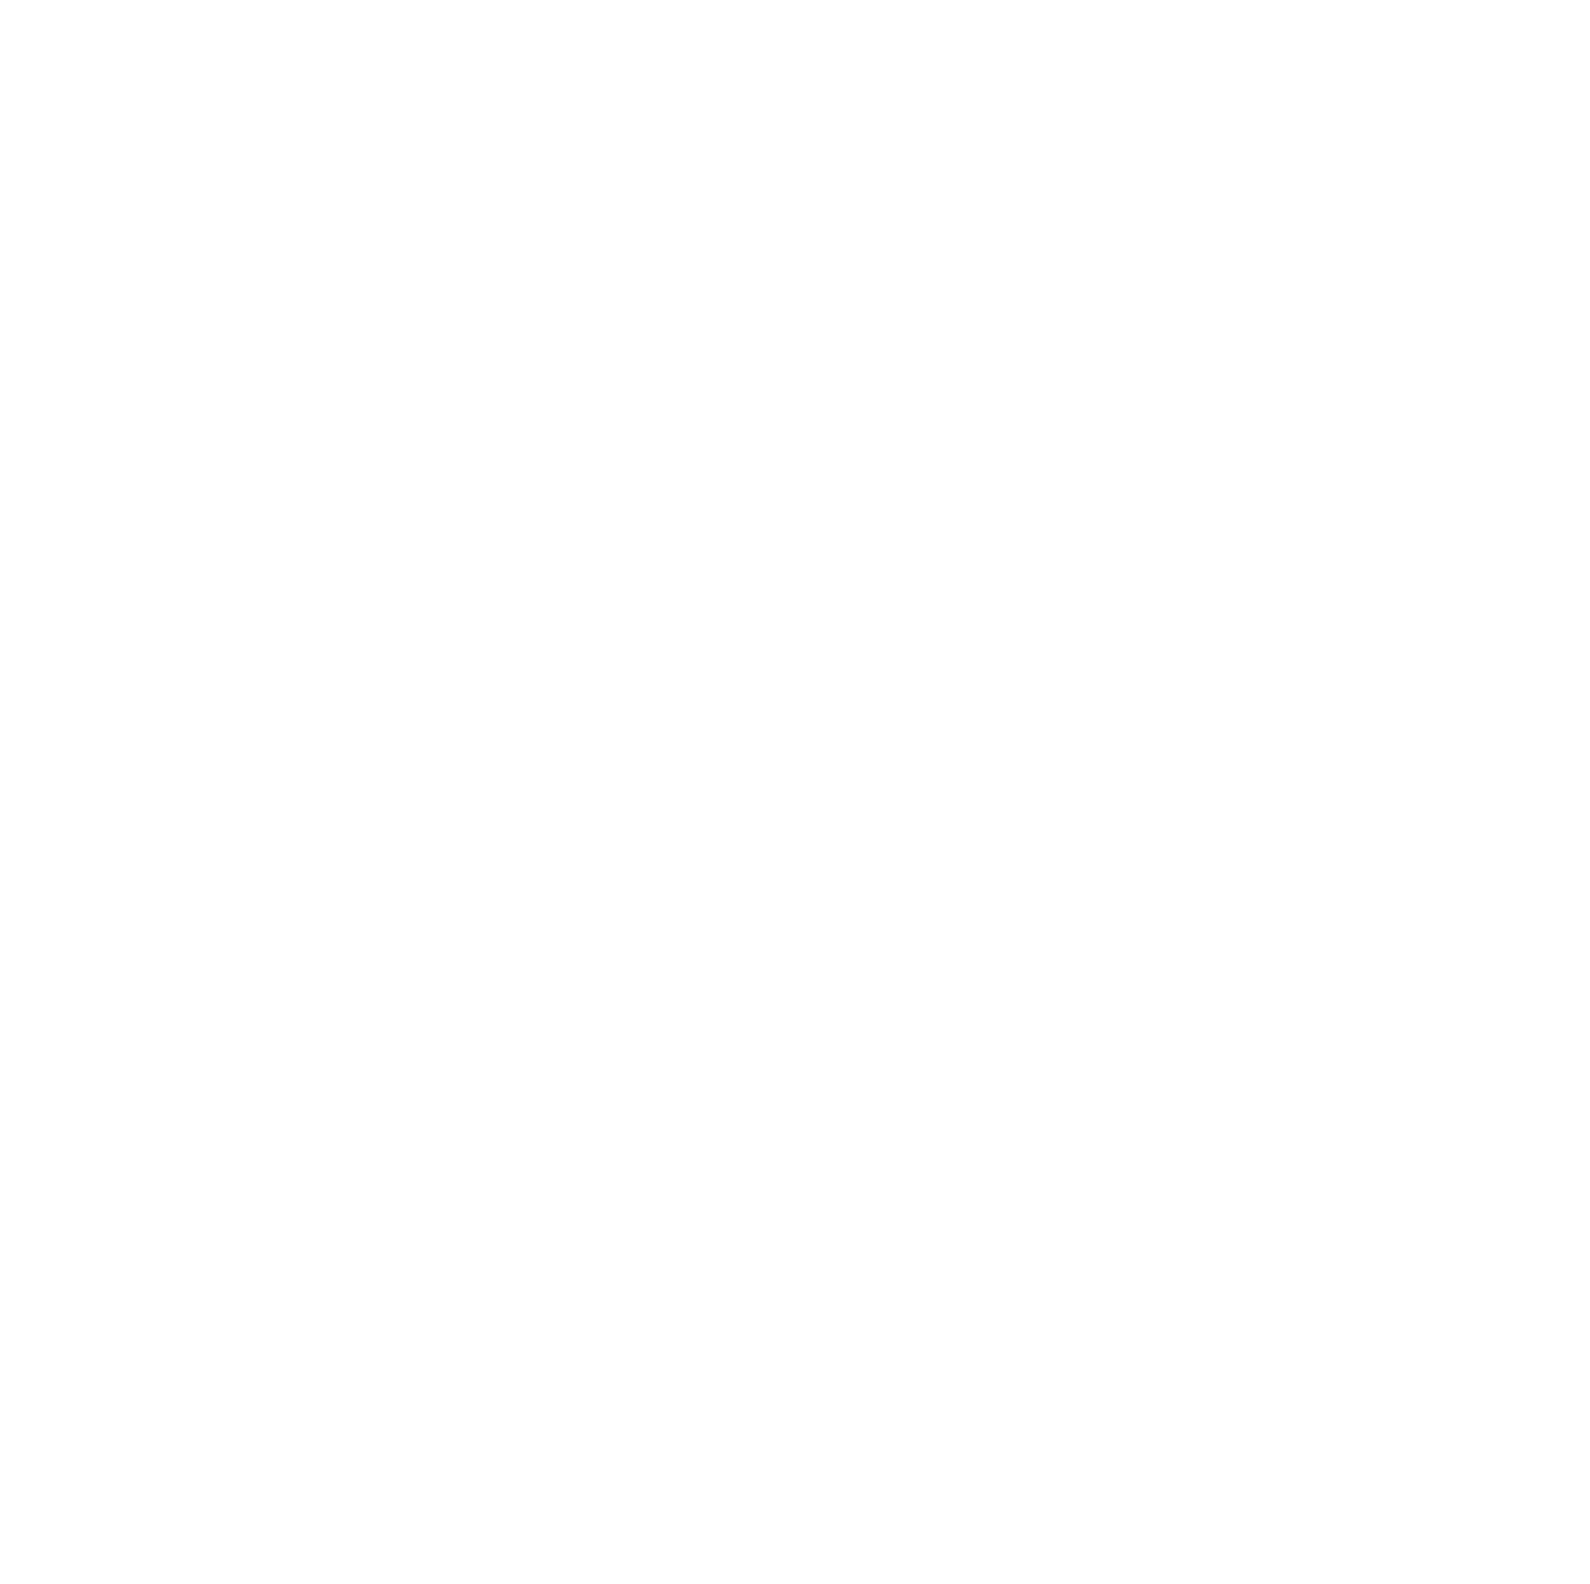 AFC Energy logo for dark backgrounds (transparent PNG)